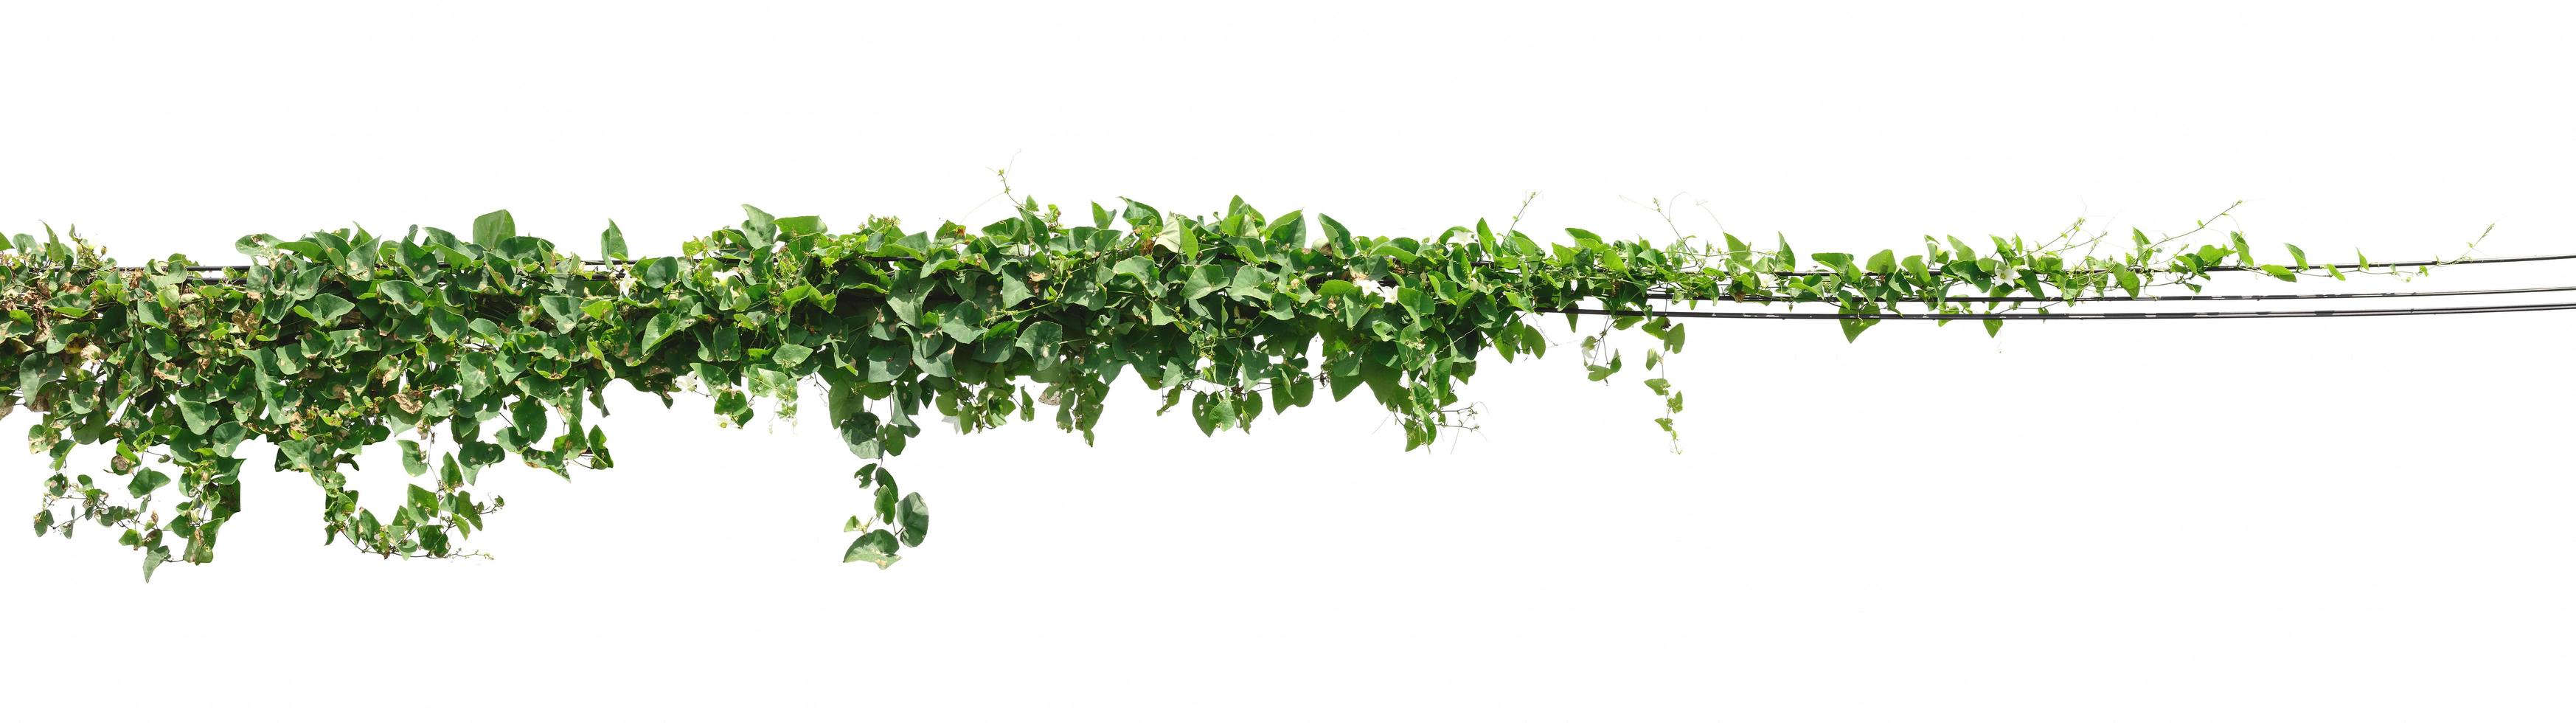 Weinpflanze, Efeublätter Pflanze auf Stangen isoliert auf weißem Hintergrund foto